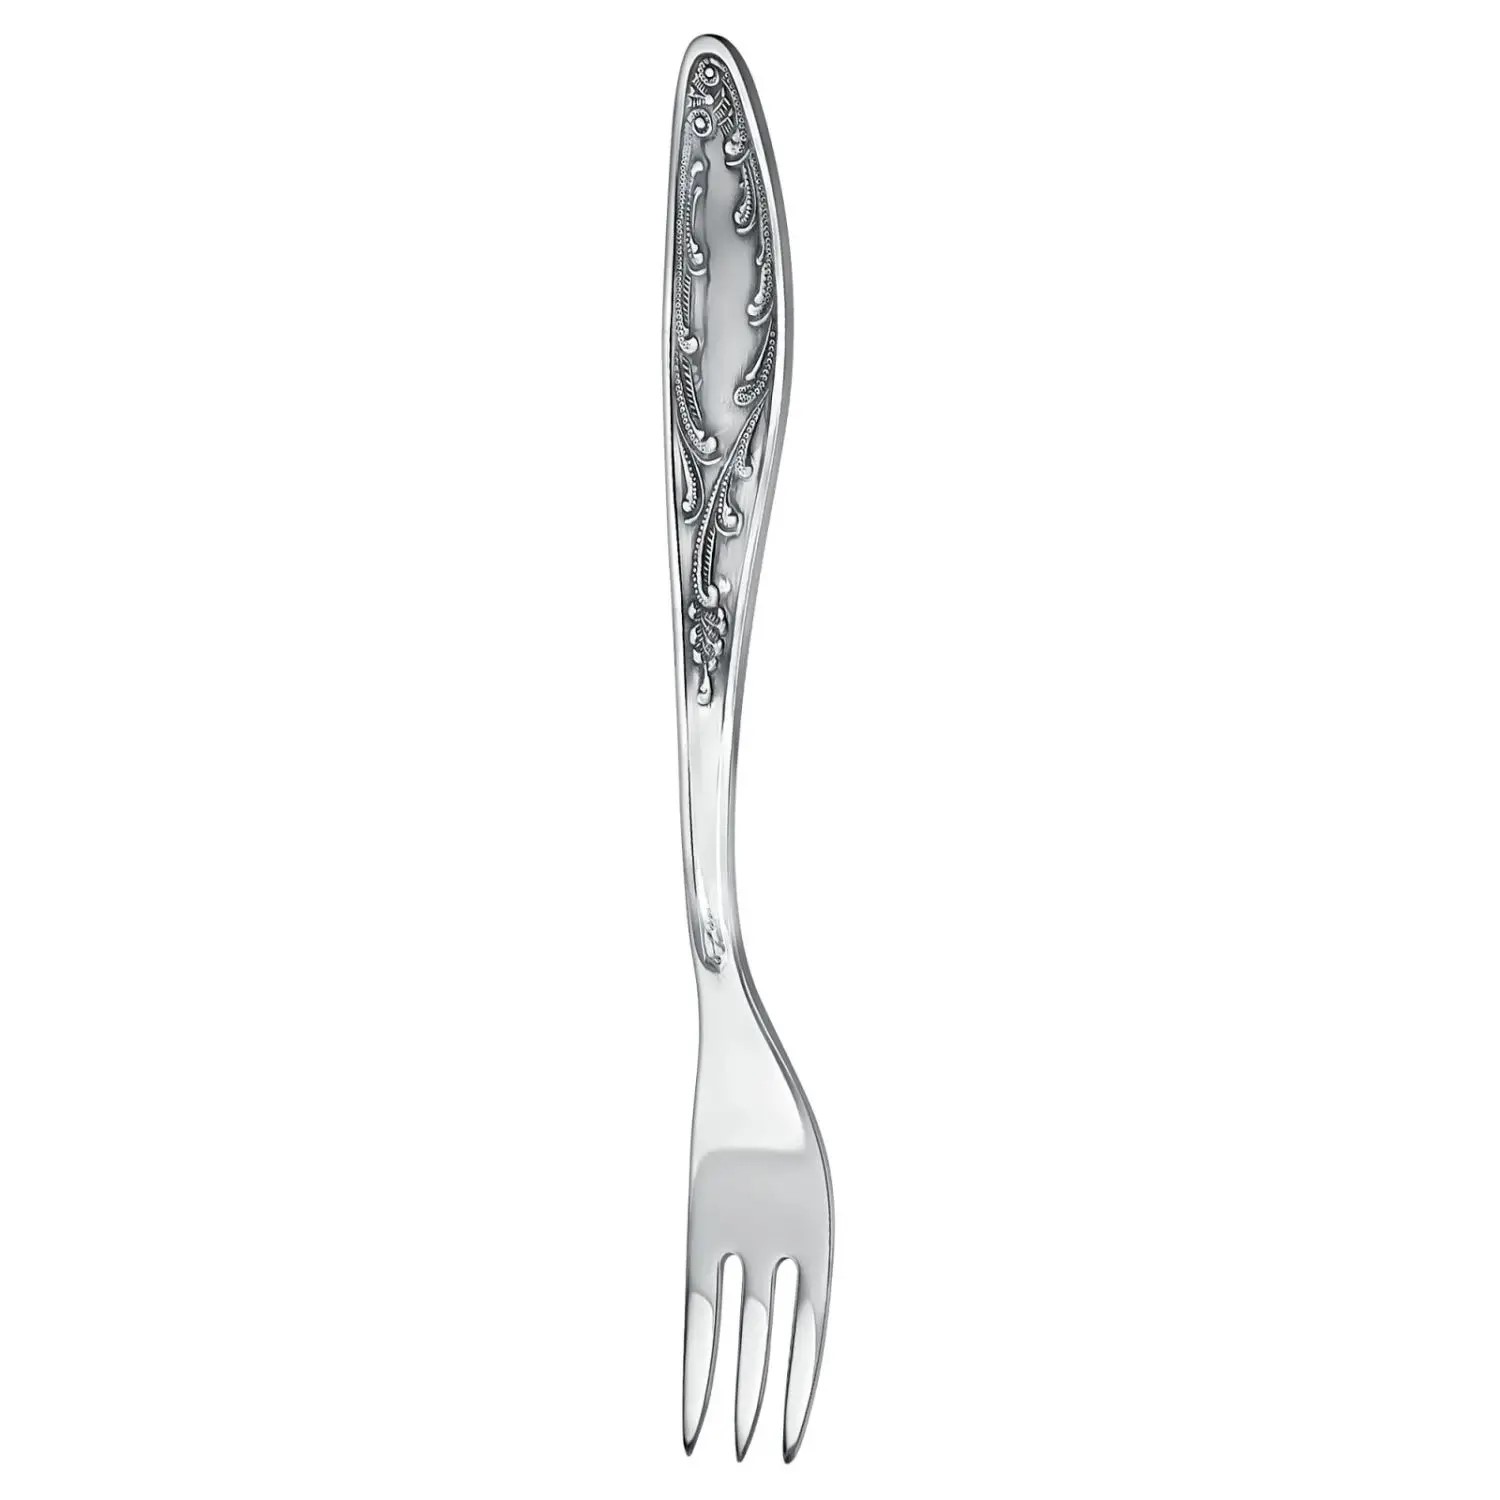 Nickel silver forks for fruit